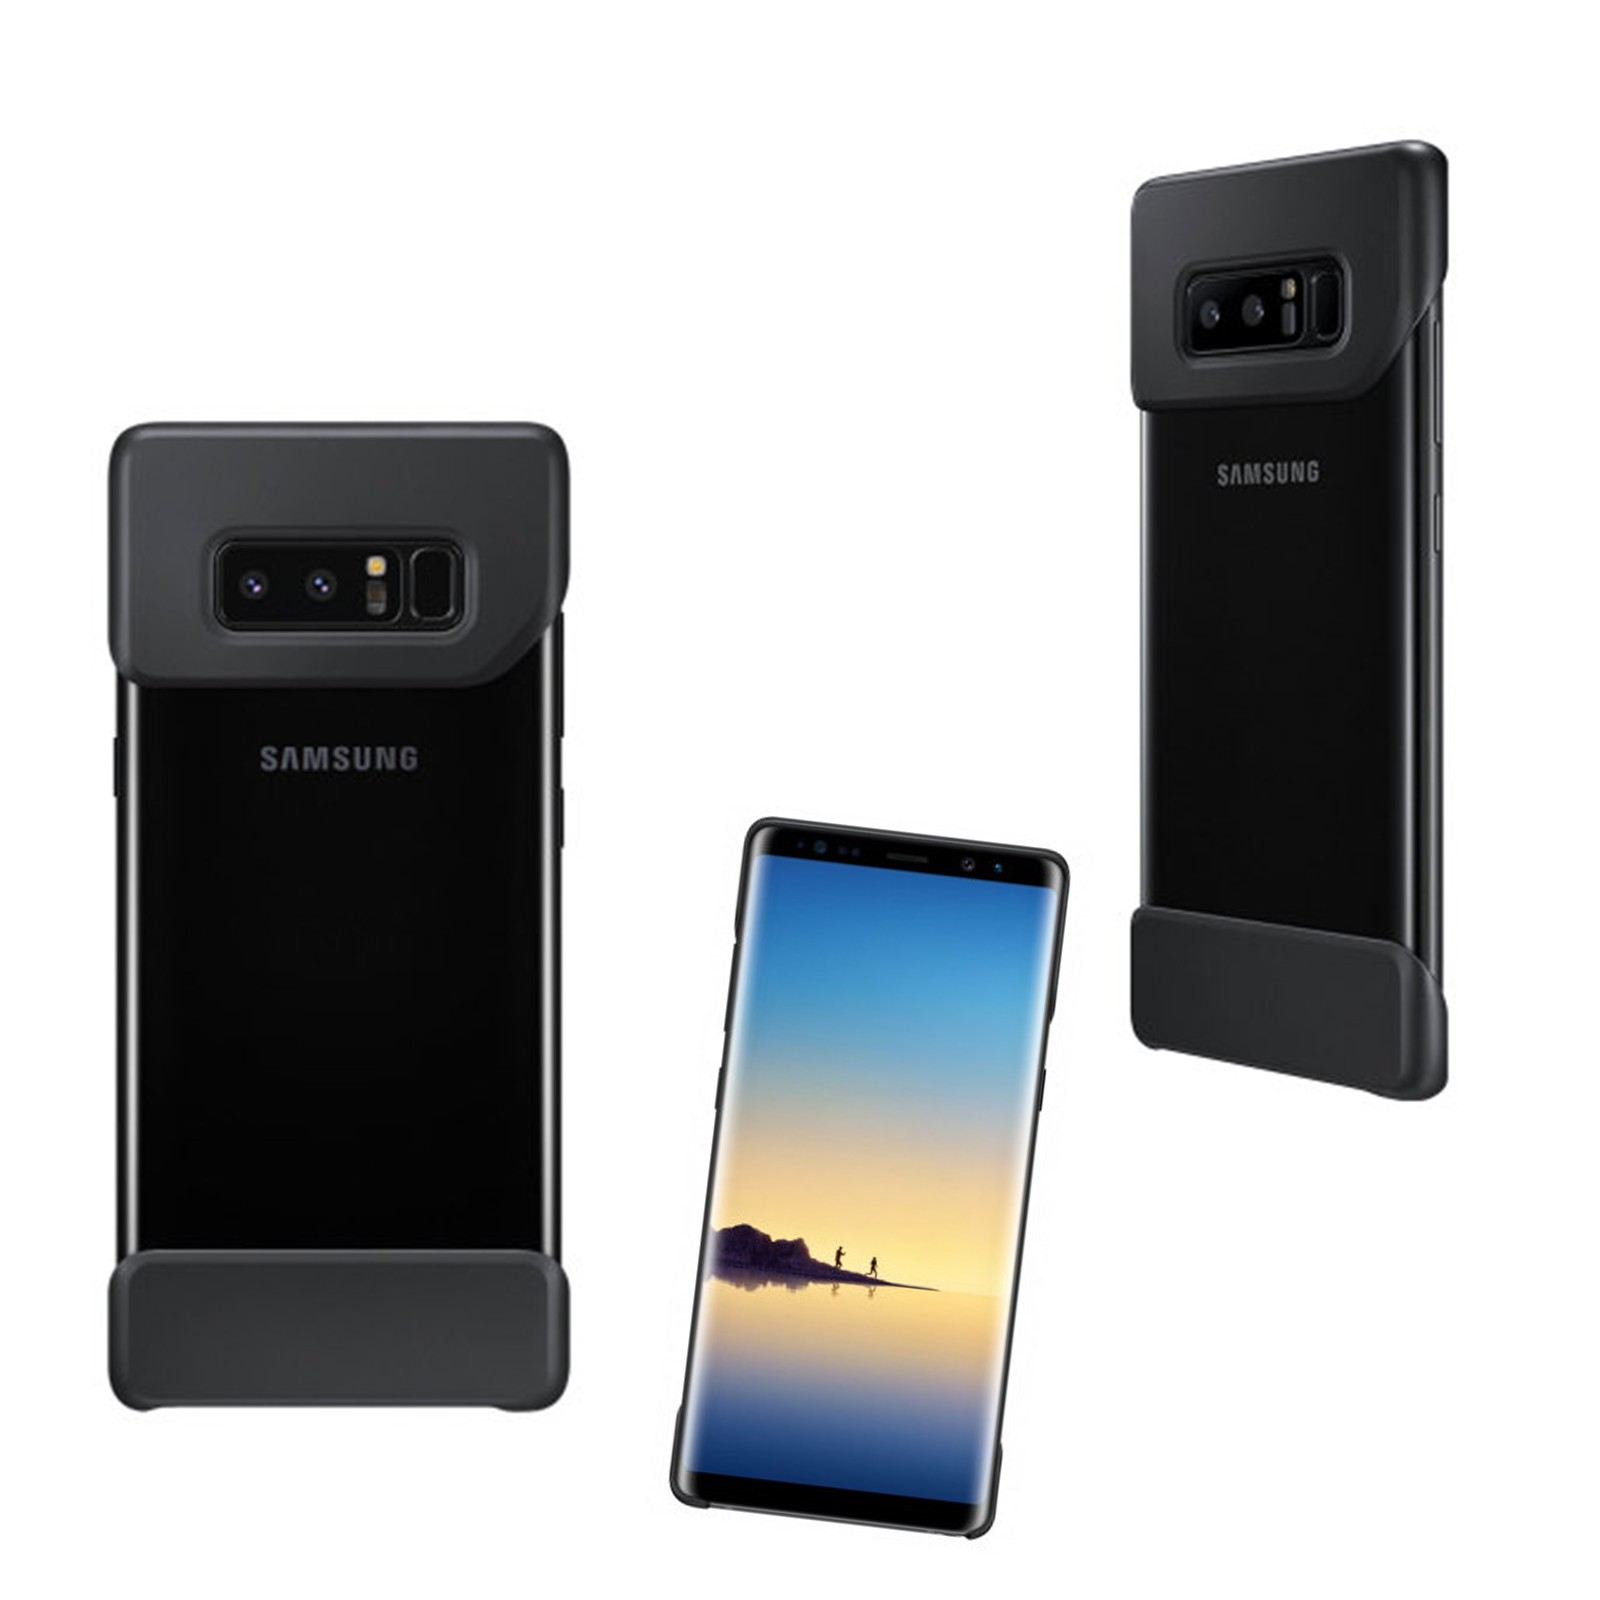 GENERICA Galaxy Note 8 2 Galaxy Schwarz - 8, Cover Schwarz, Reisekoffer, Piece Note Samsung